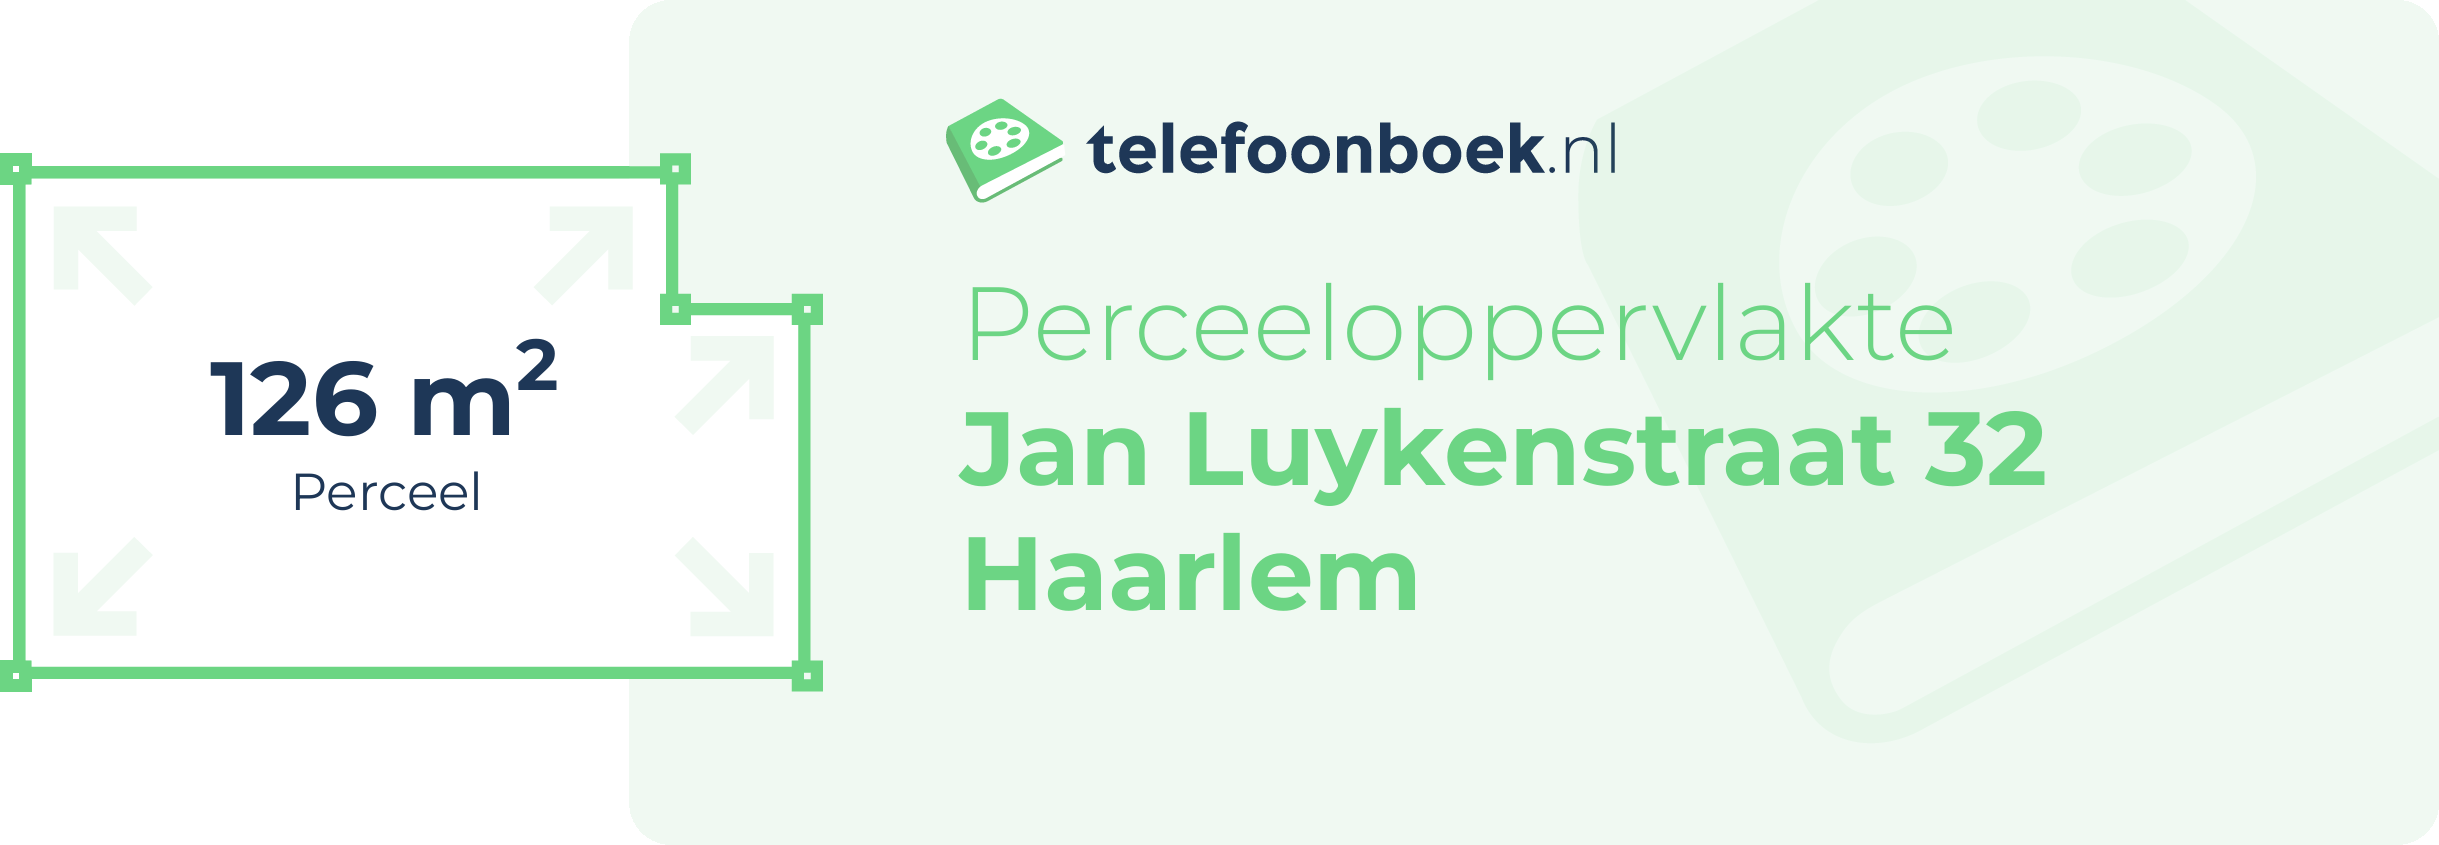 Perceeloppervlakte Jan Luykenstraat 32 Haarlem